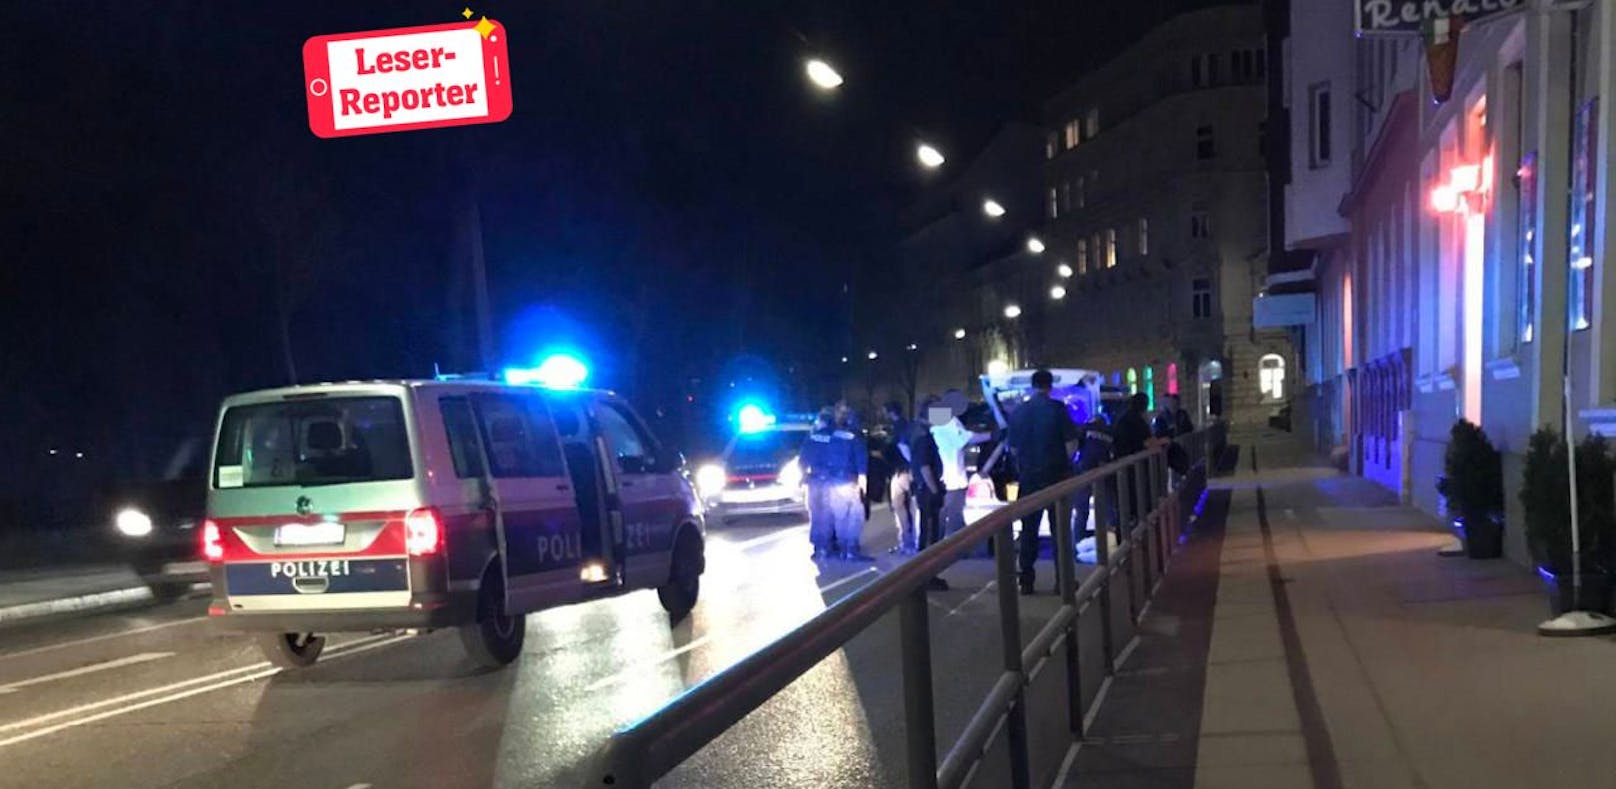 In der Winckelmannstraße endete die Flucht vor der Polizei. 